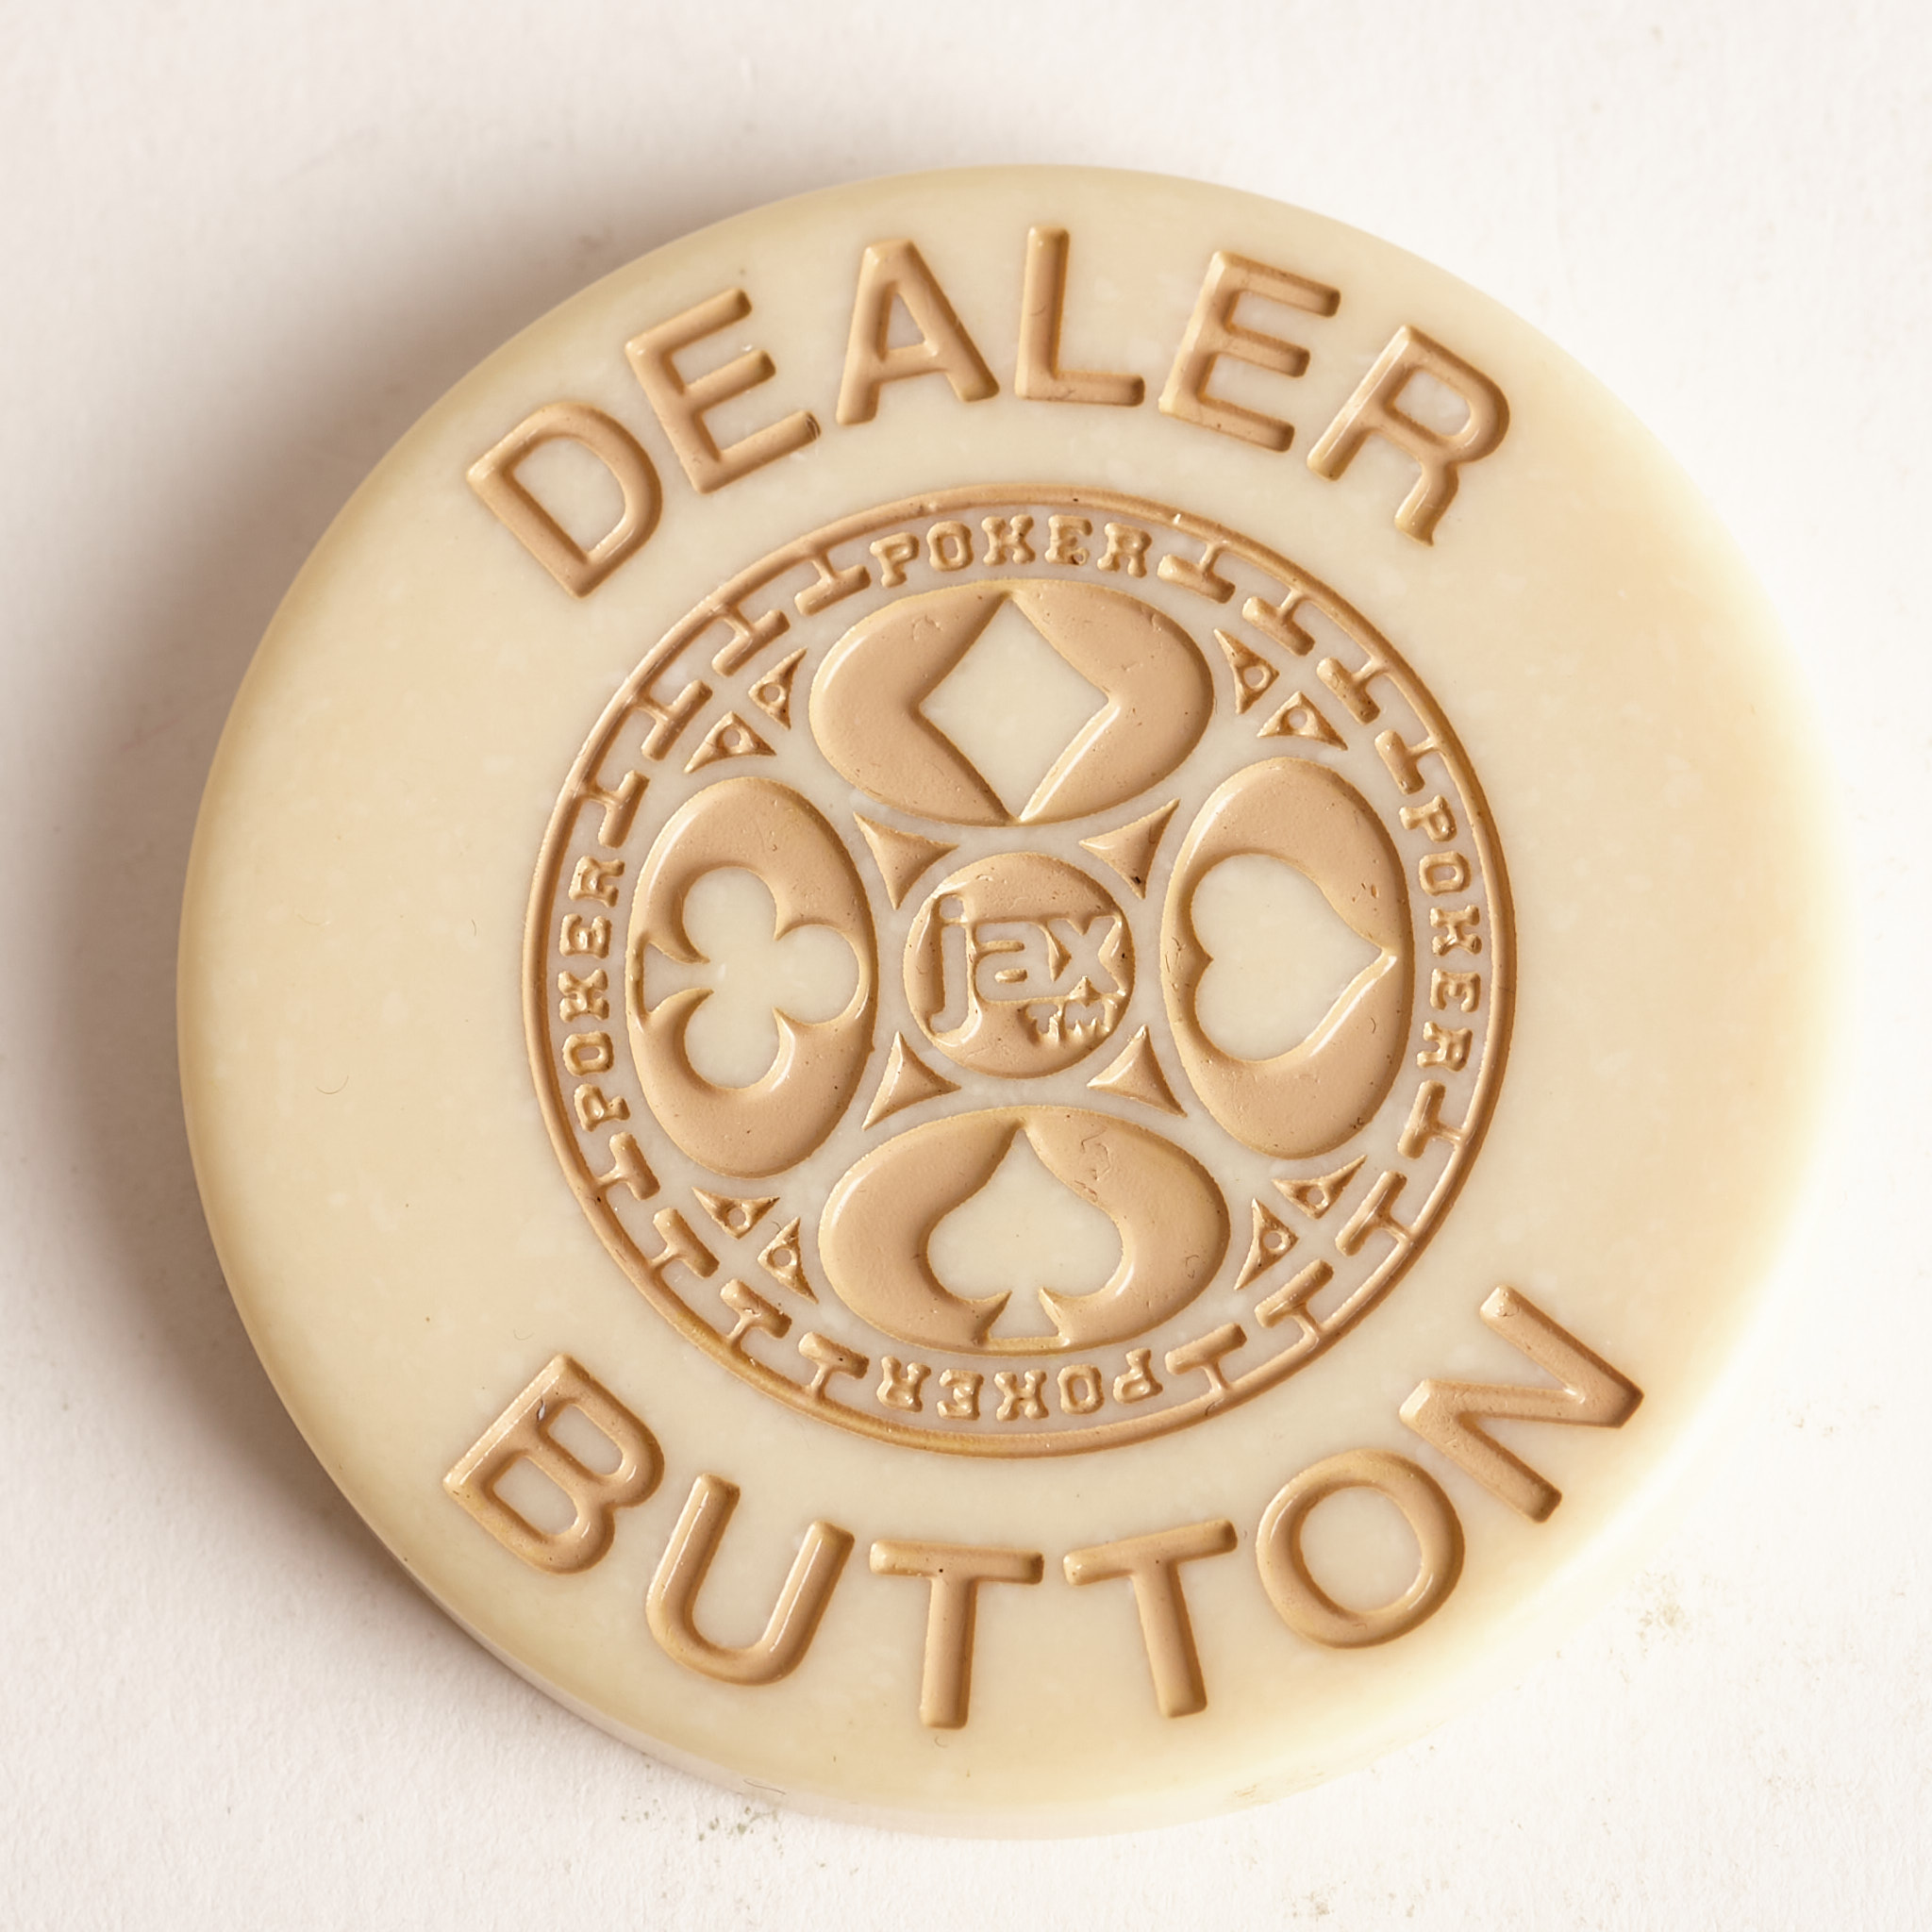 DEALER BUTTON, Poker Dealer Button